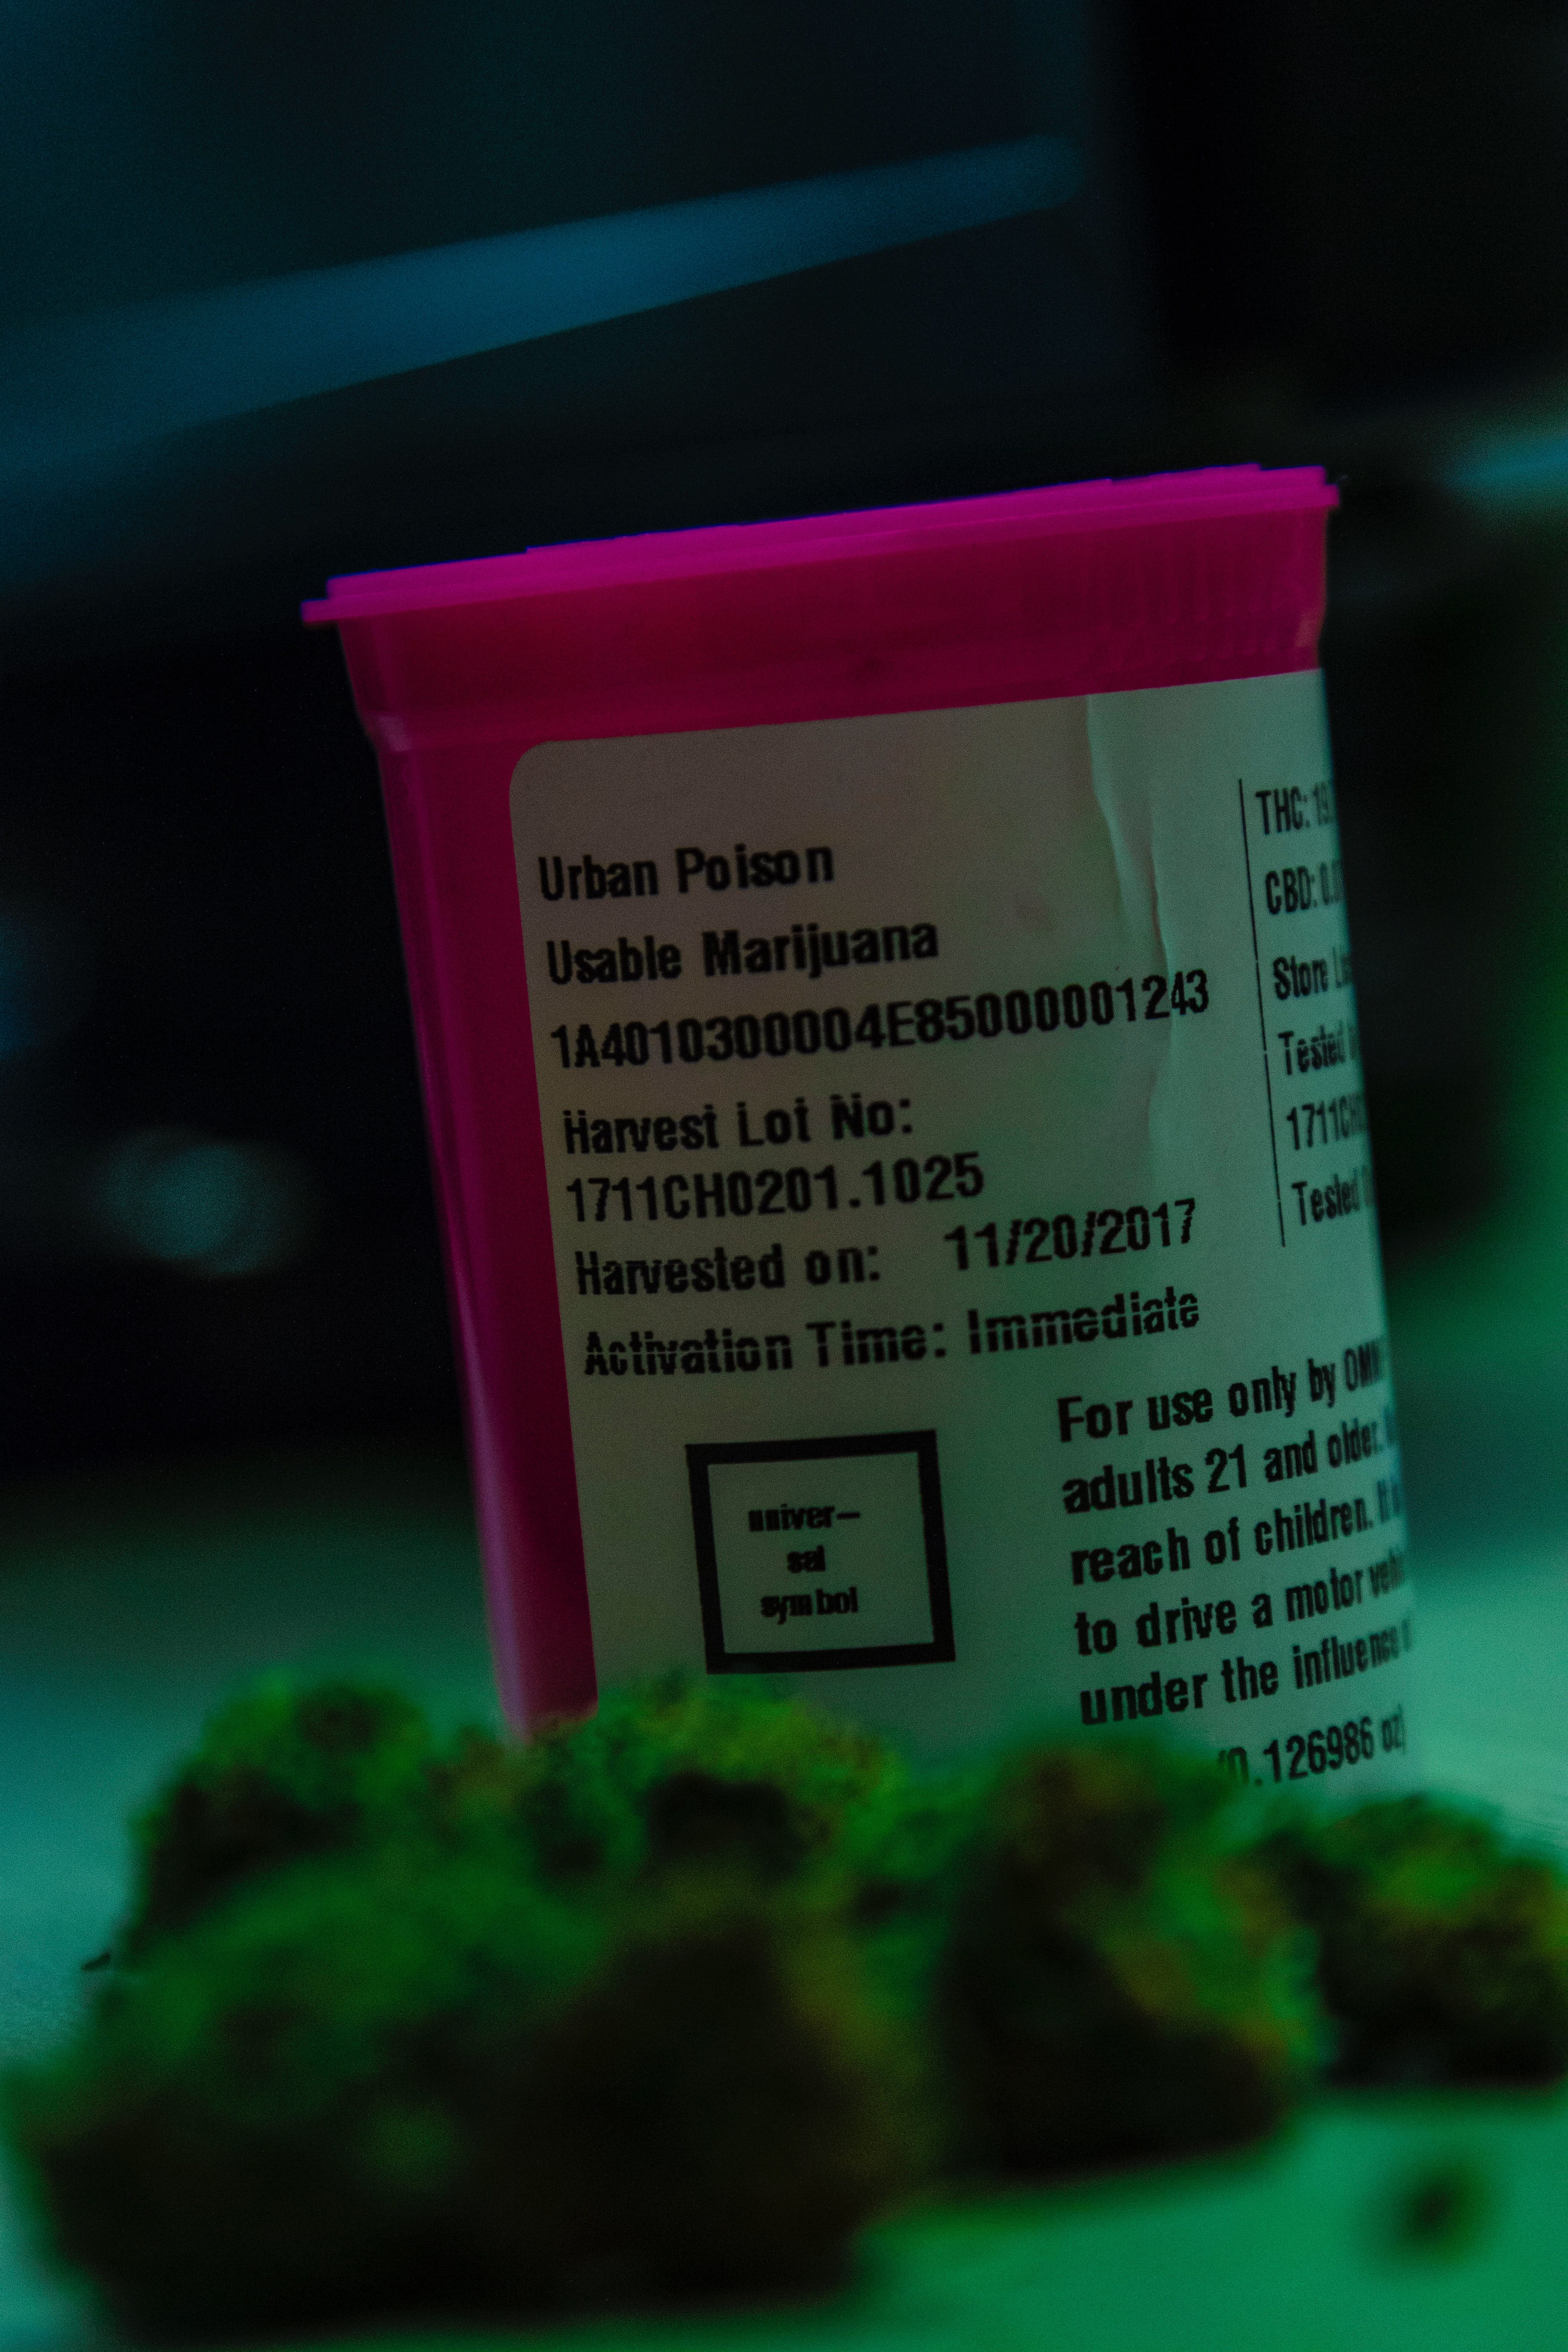 Pink prescription bottle for medical marijuana; image by LexScope, via Unsplash.com.